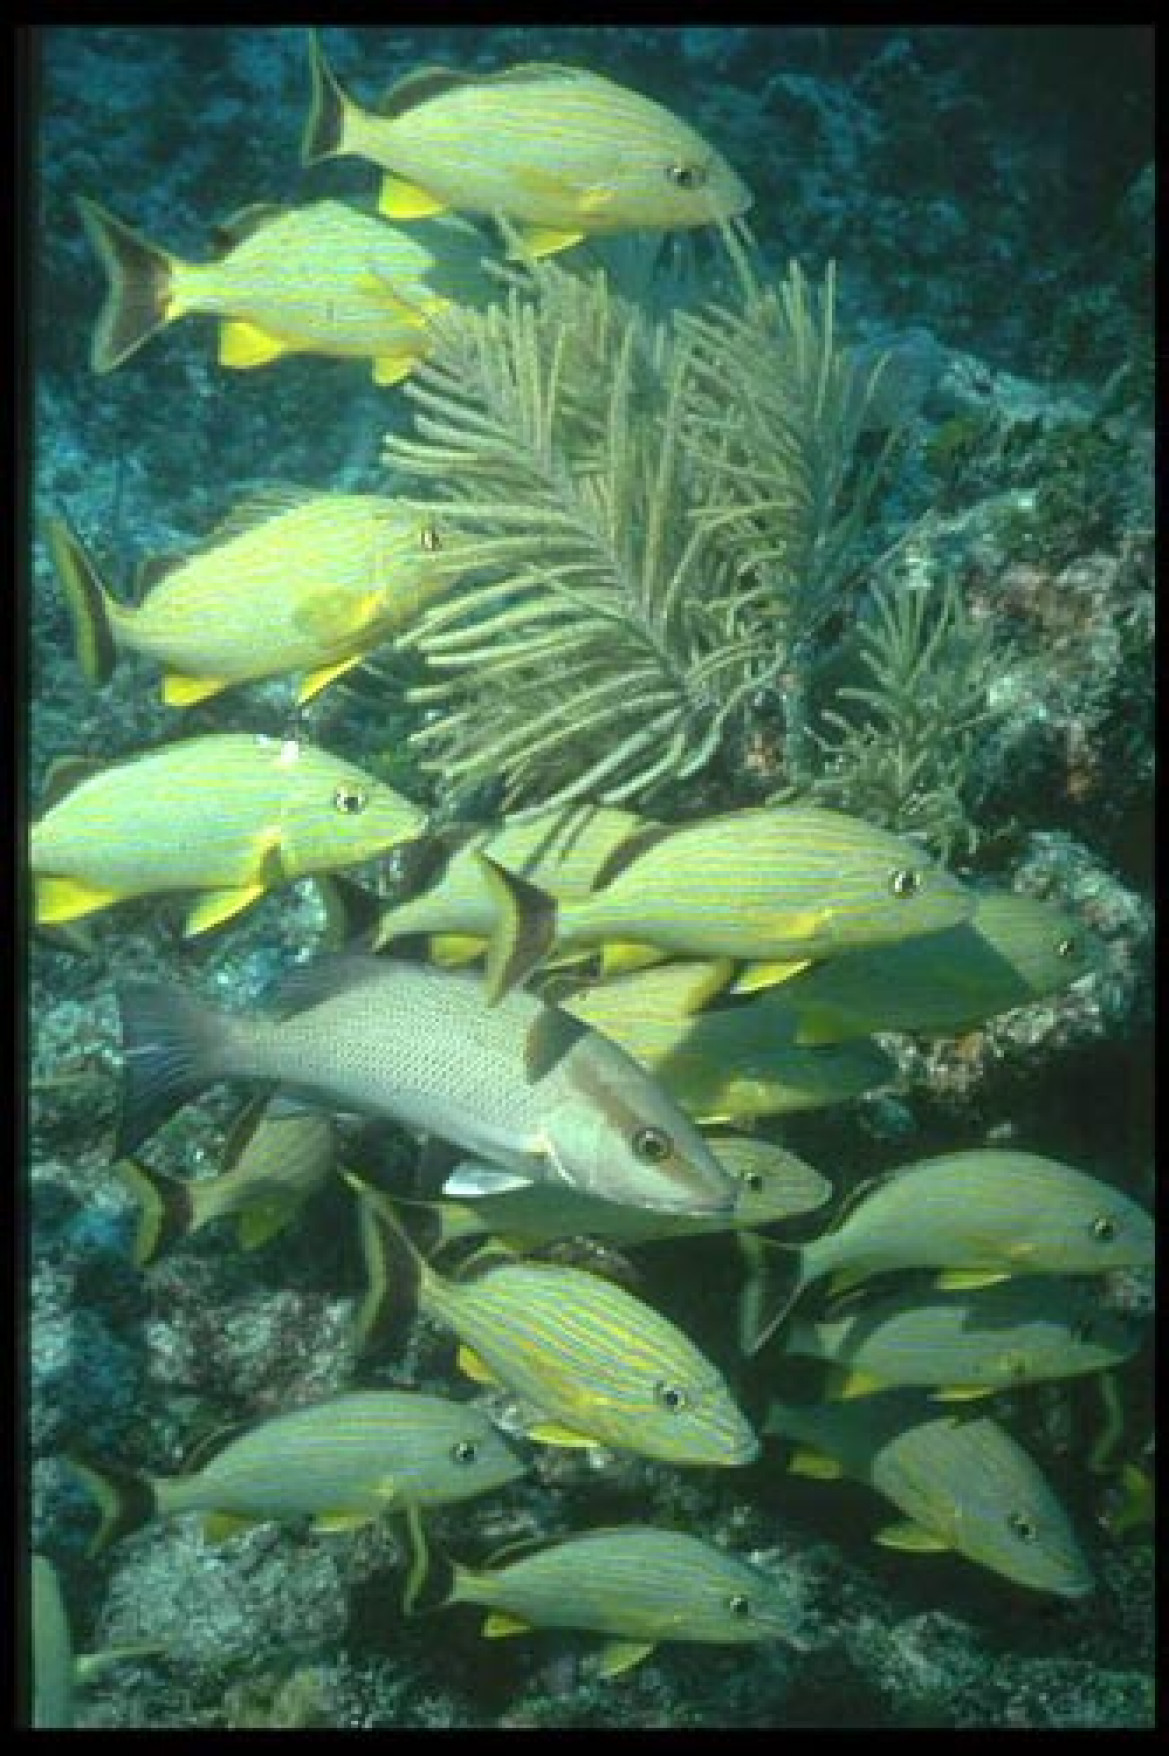 Z podziwem obserwowałem determinacje tych niewielkich, żółtych rybek. Broniąc swojego kawałka rafy, odważnie atakowały obiektyw mojego aparatu.